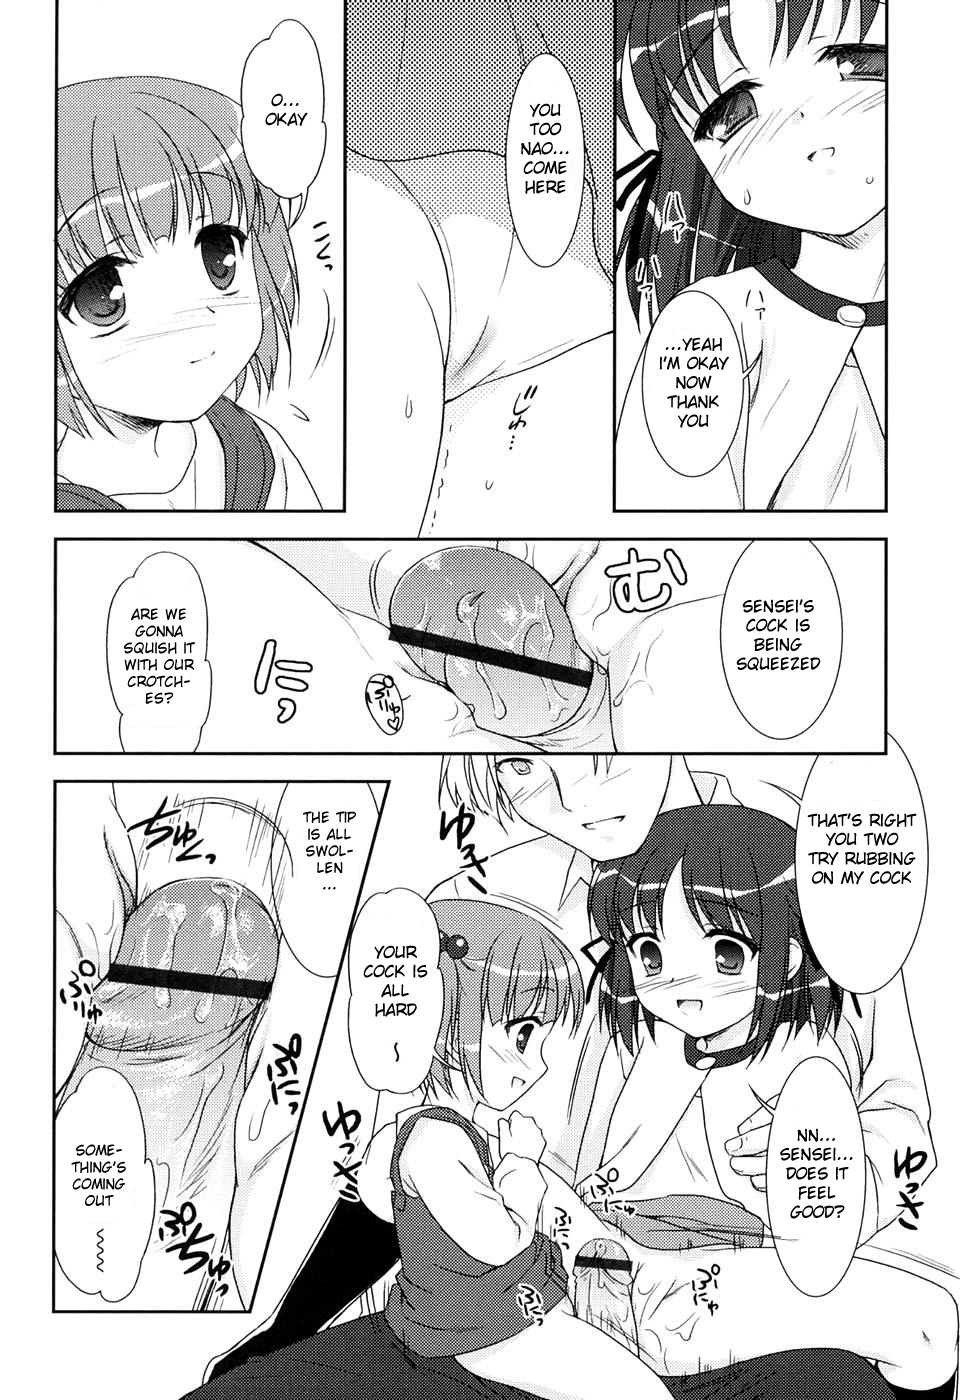 duet 11 hentai manga